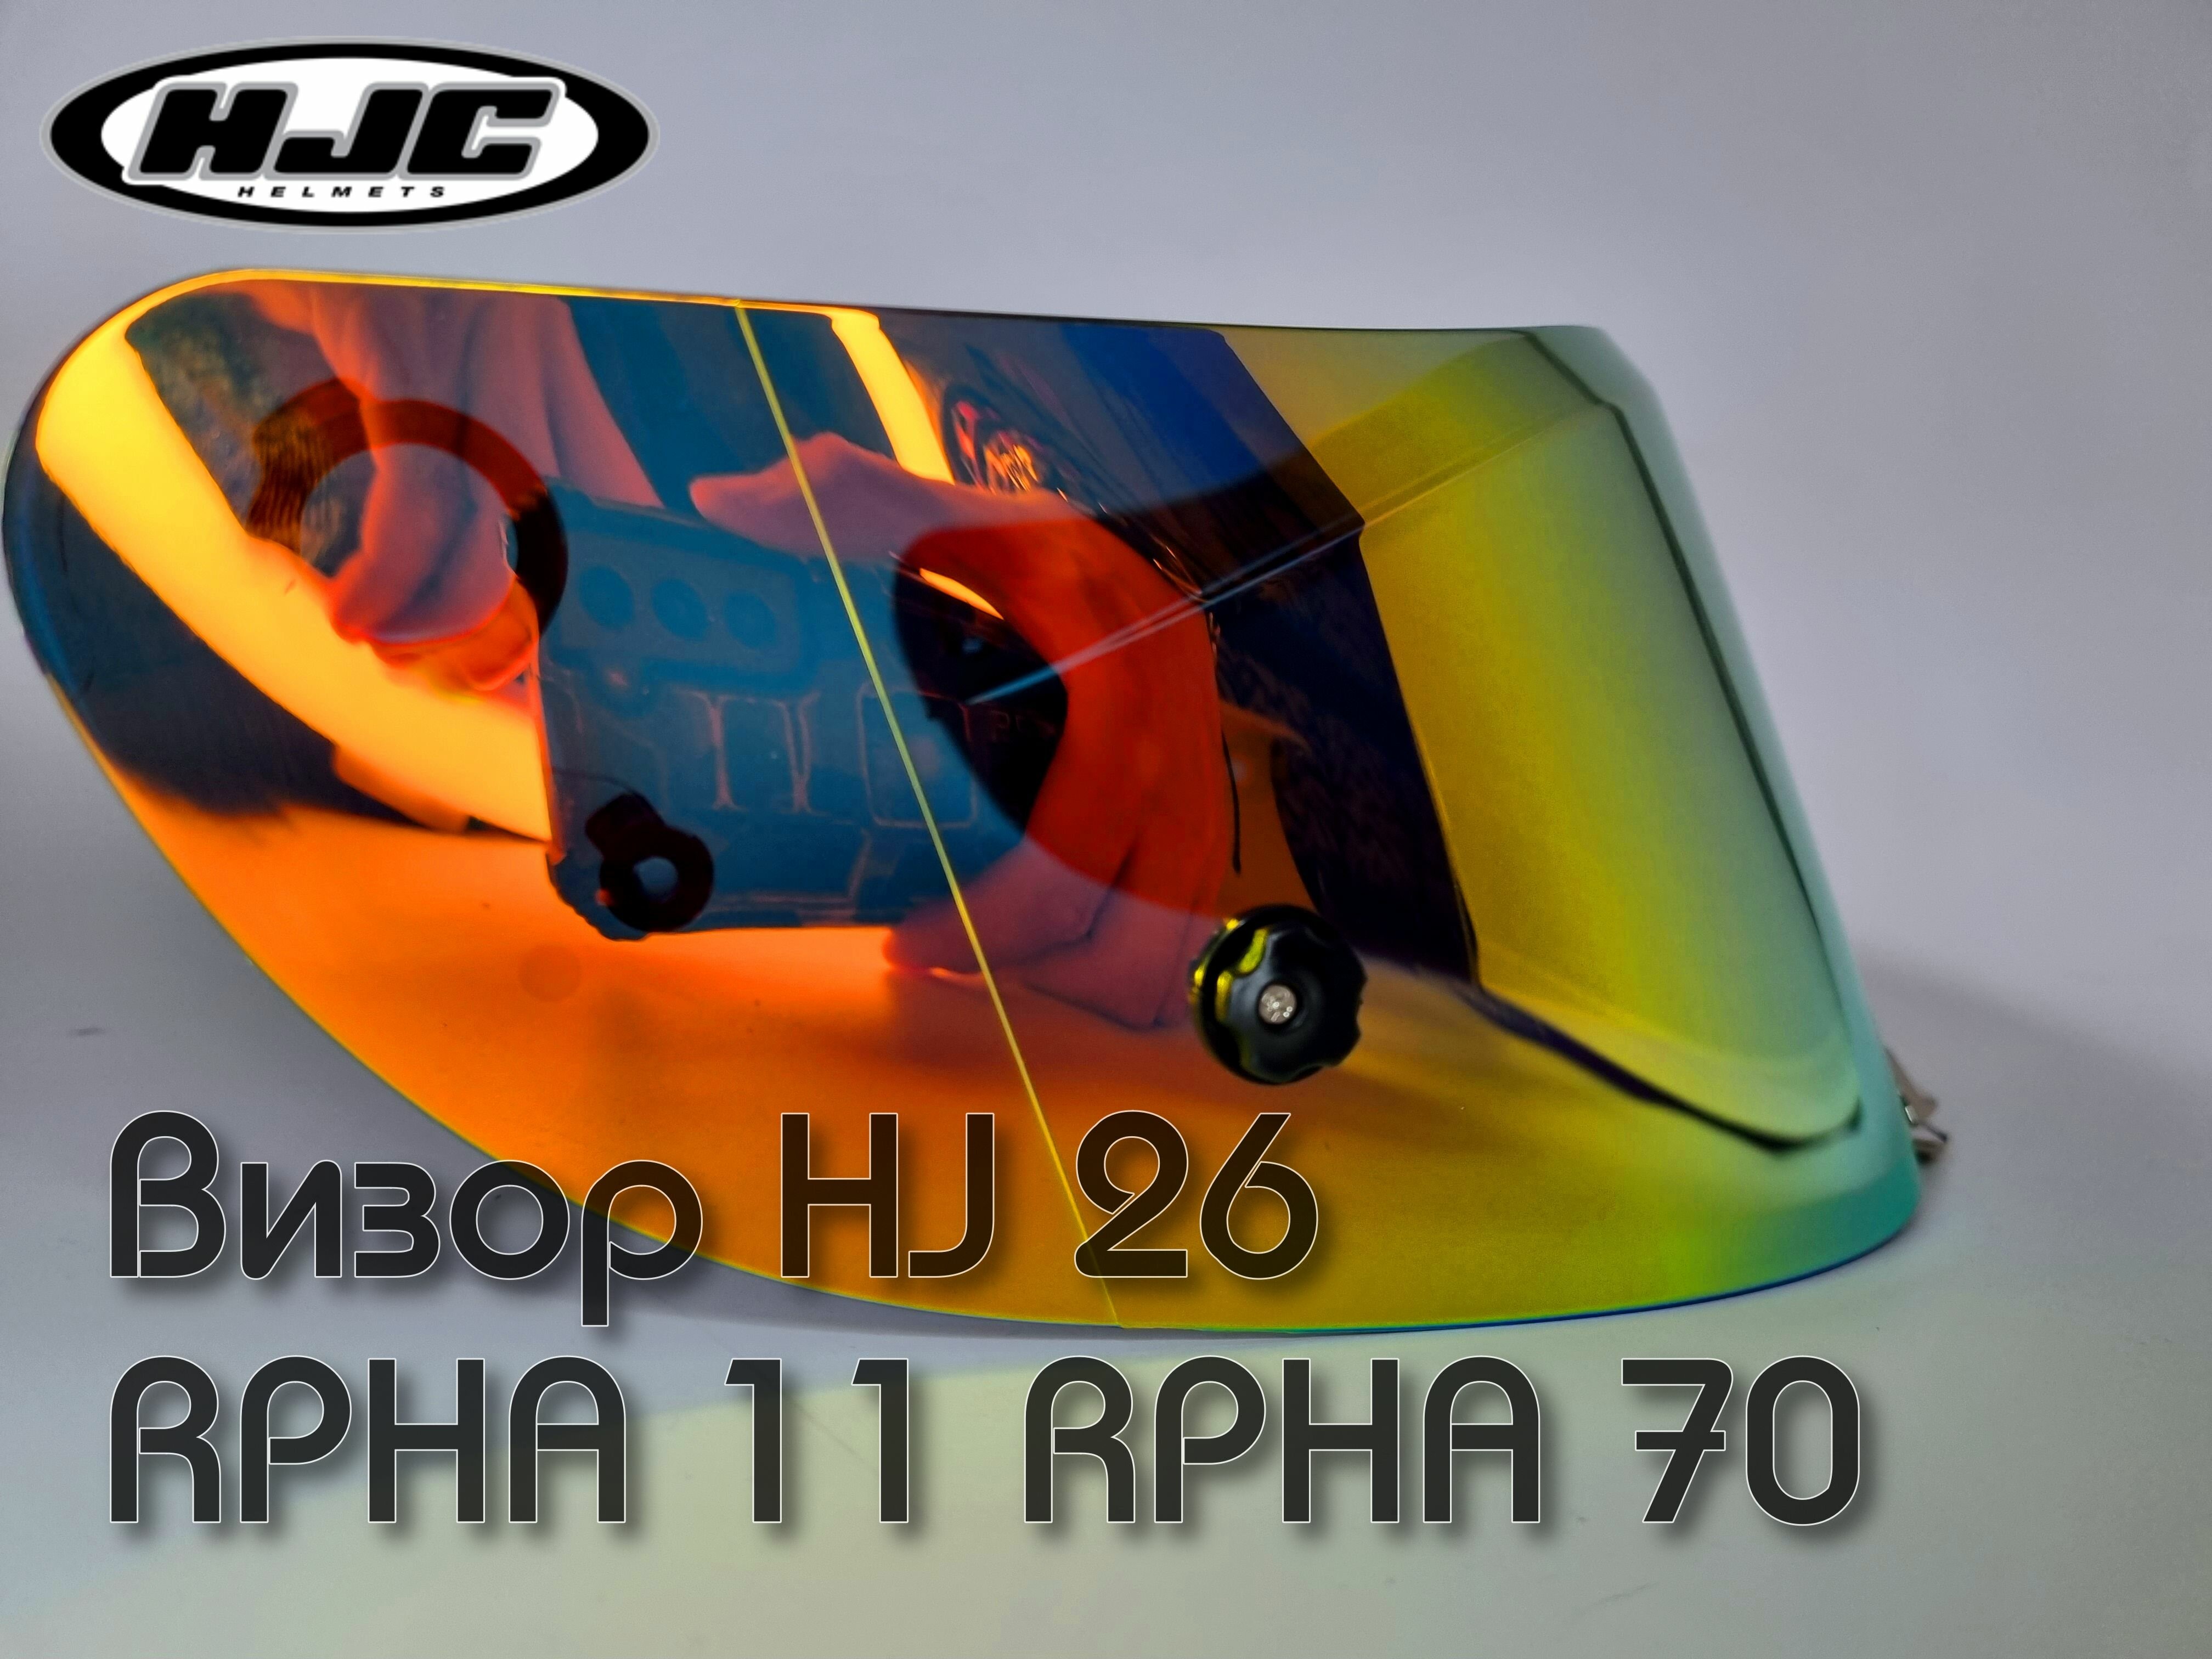 Визор HJ26. Для RPHA 11 и RPHA 70.